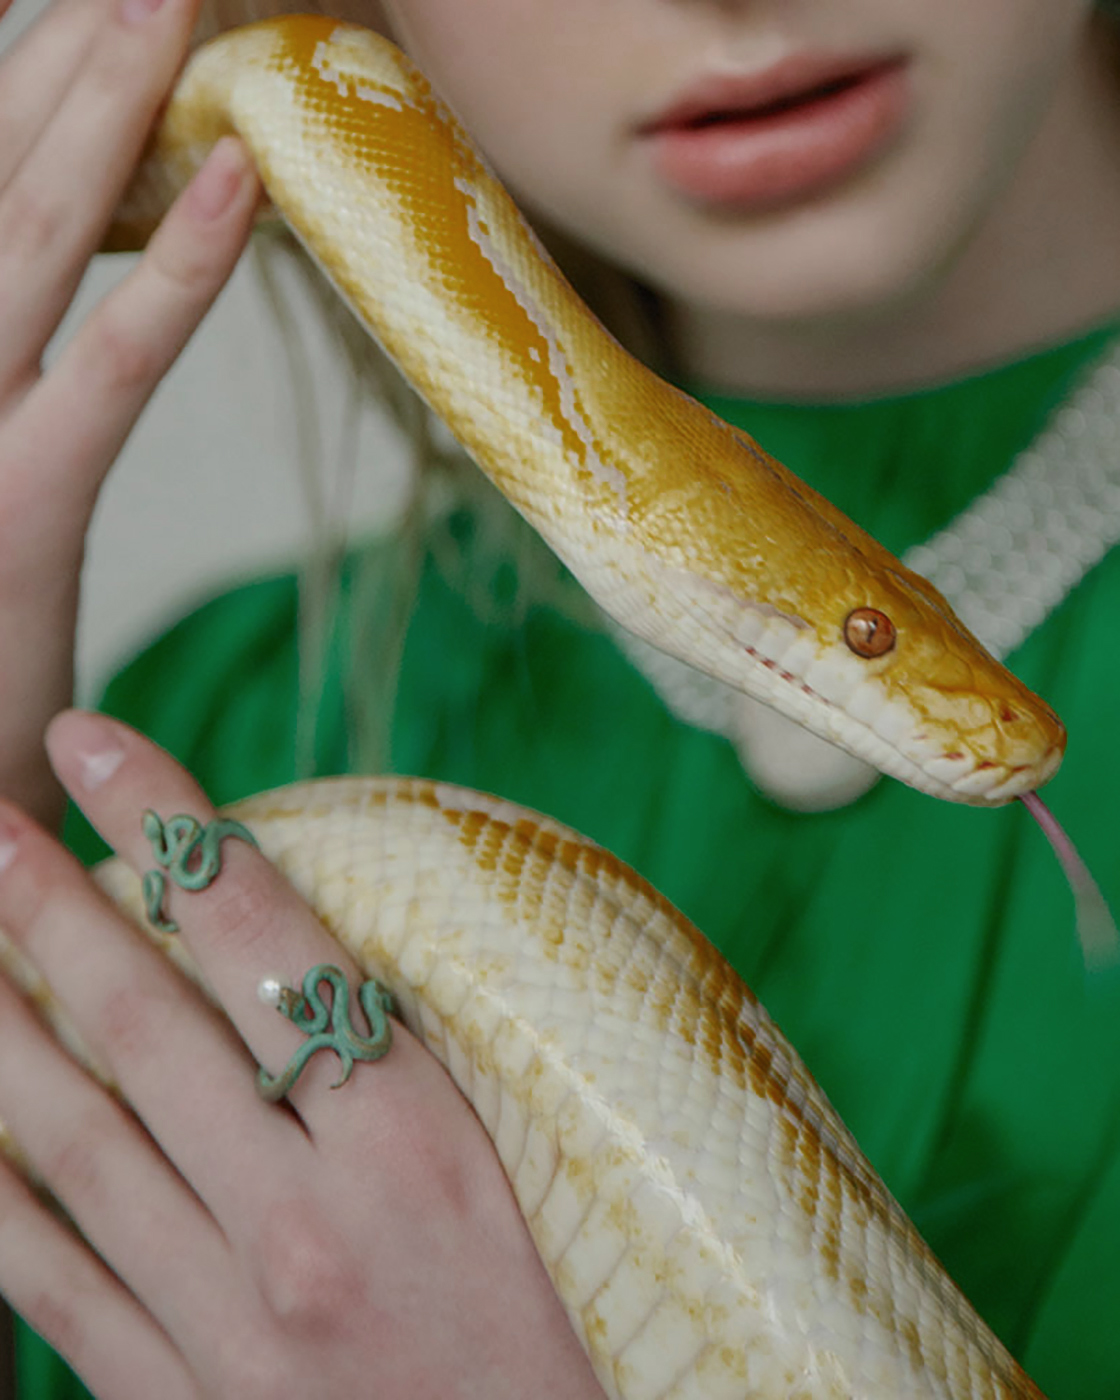 Vergoldete Patina Duo-Schlangenringe mit einer Naturperle